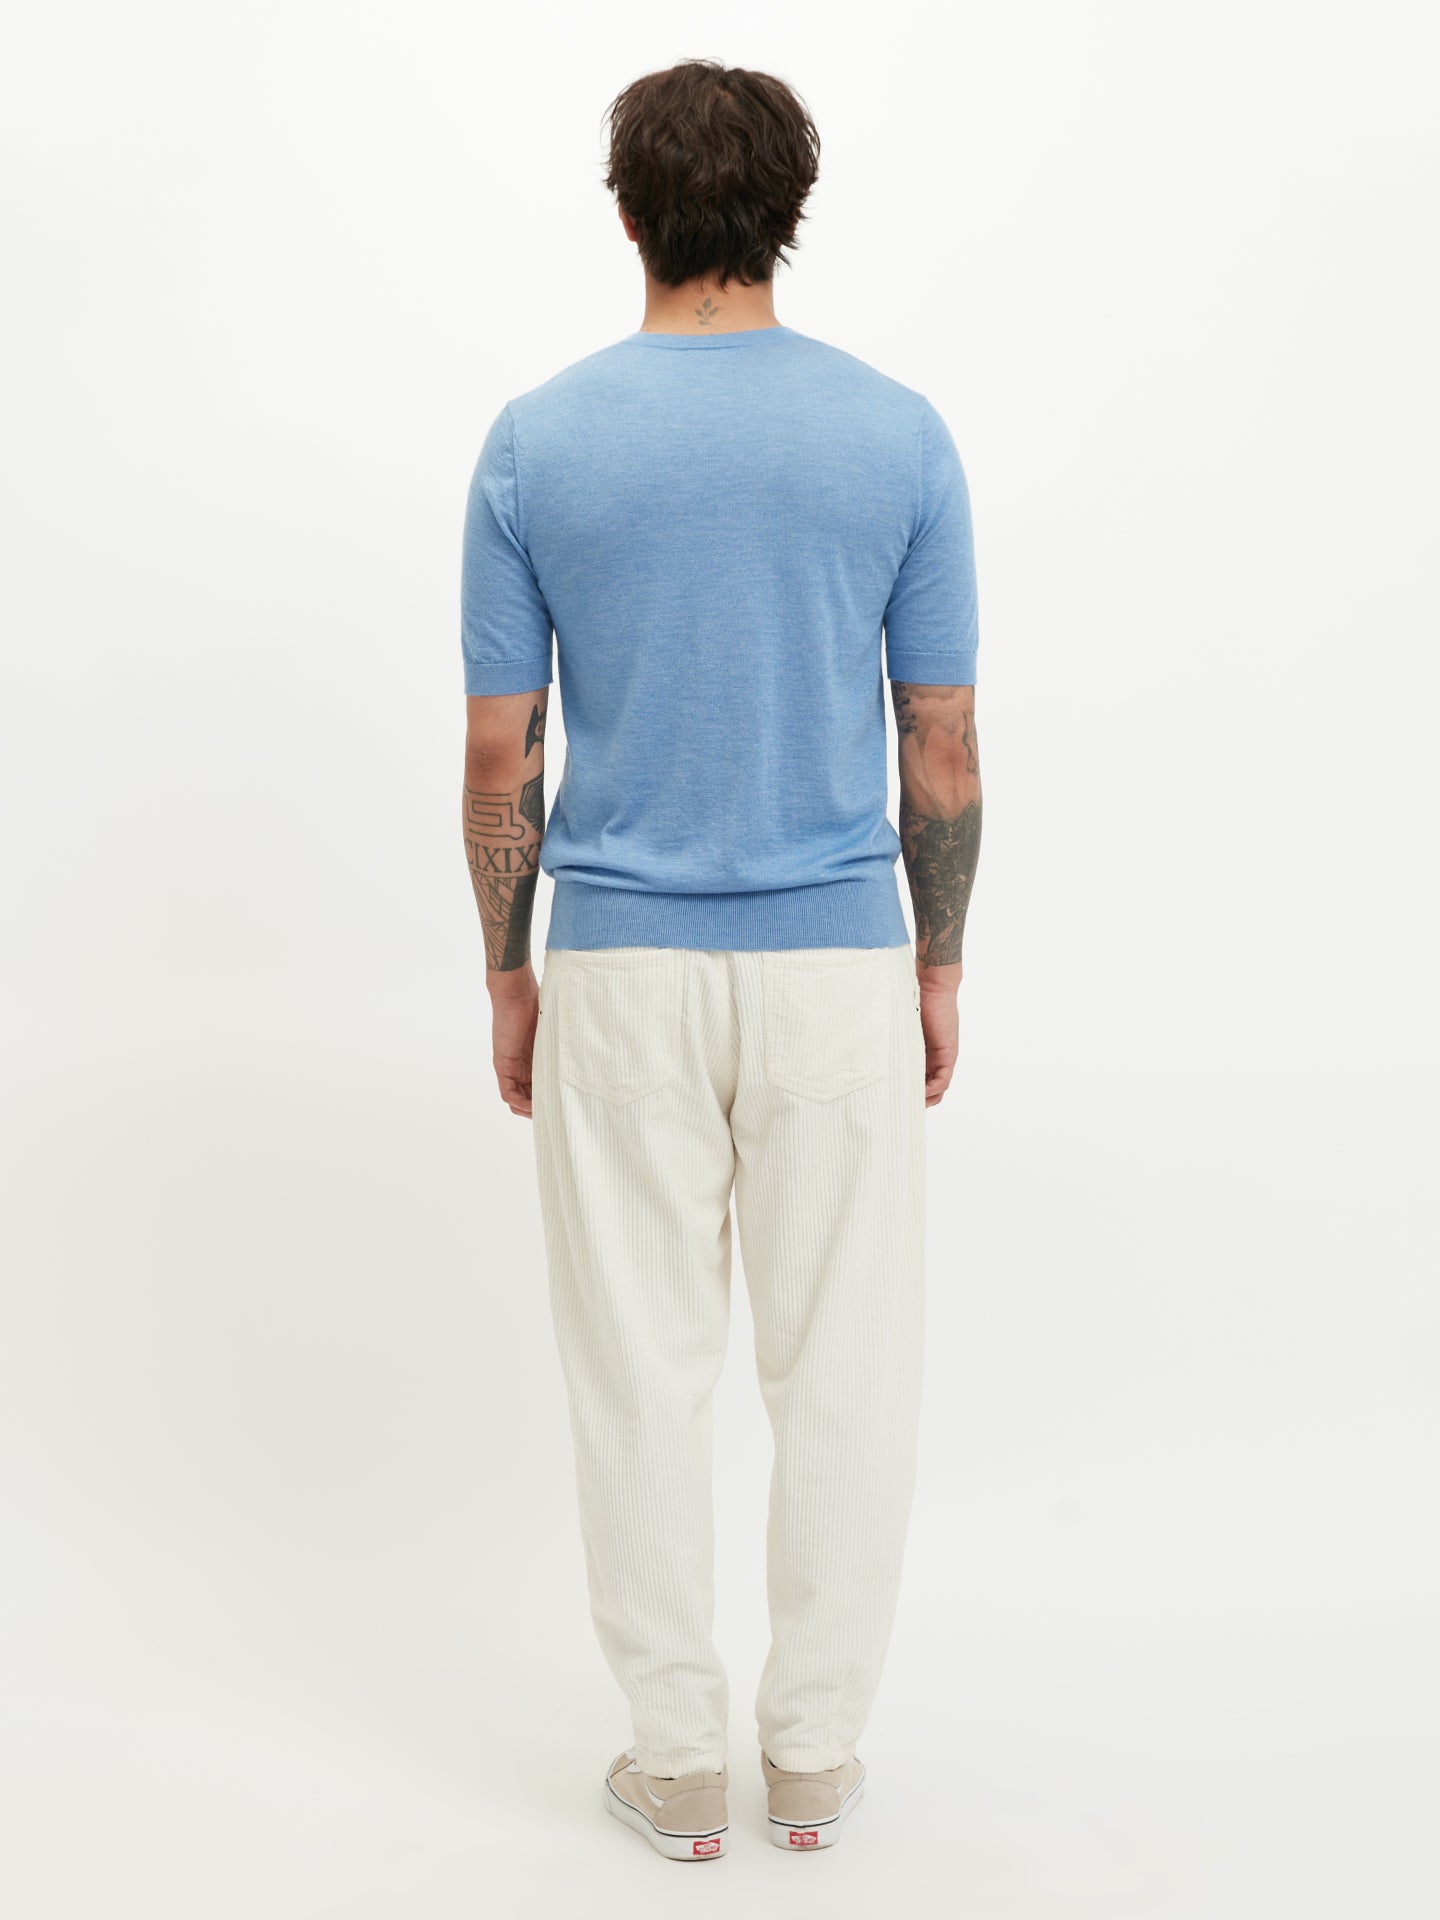 Herren-T-Shirt aus Seide und Kaschmir Blau - Gobi Cashmere